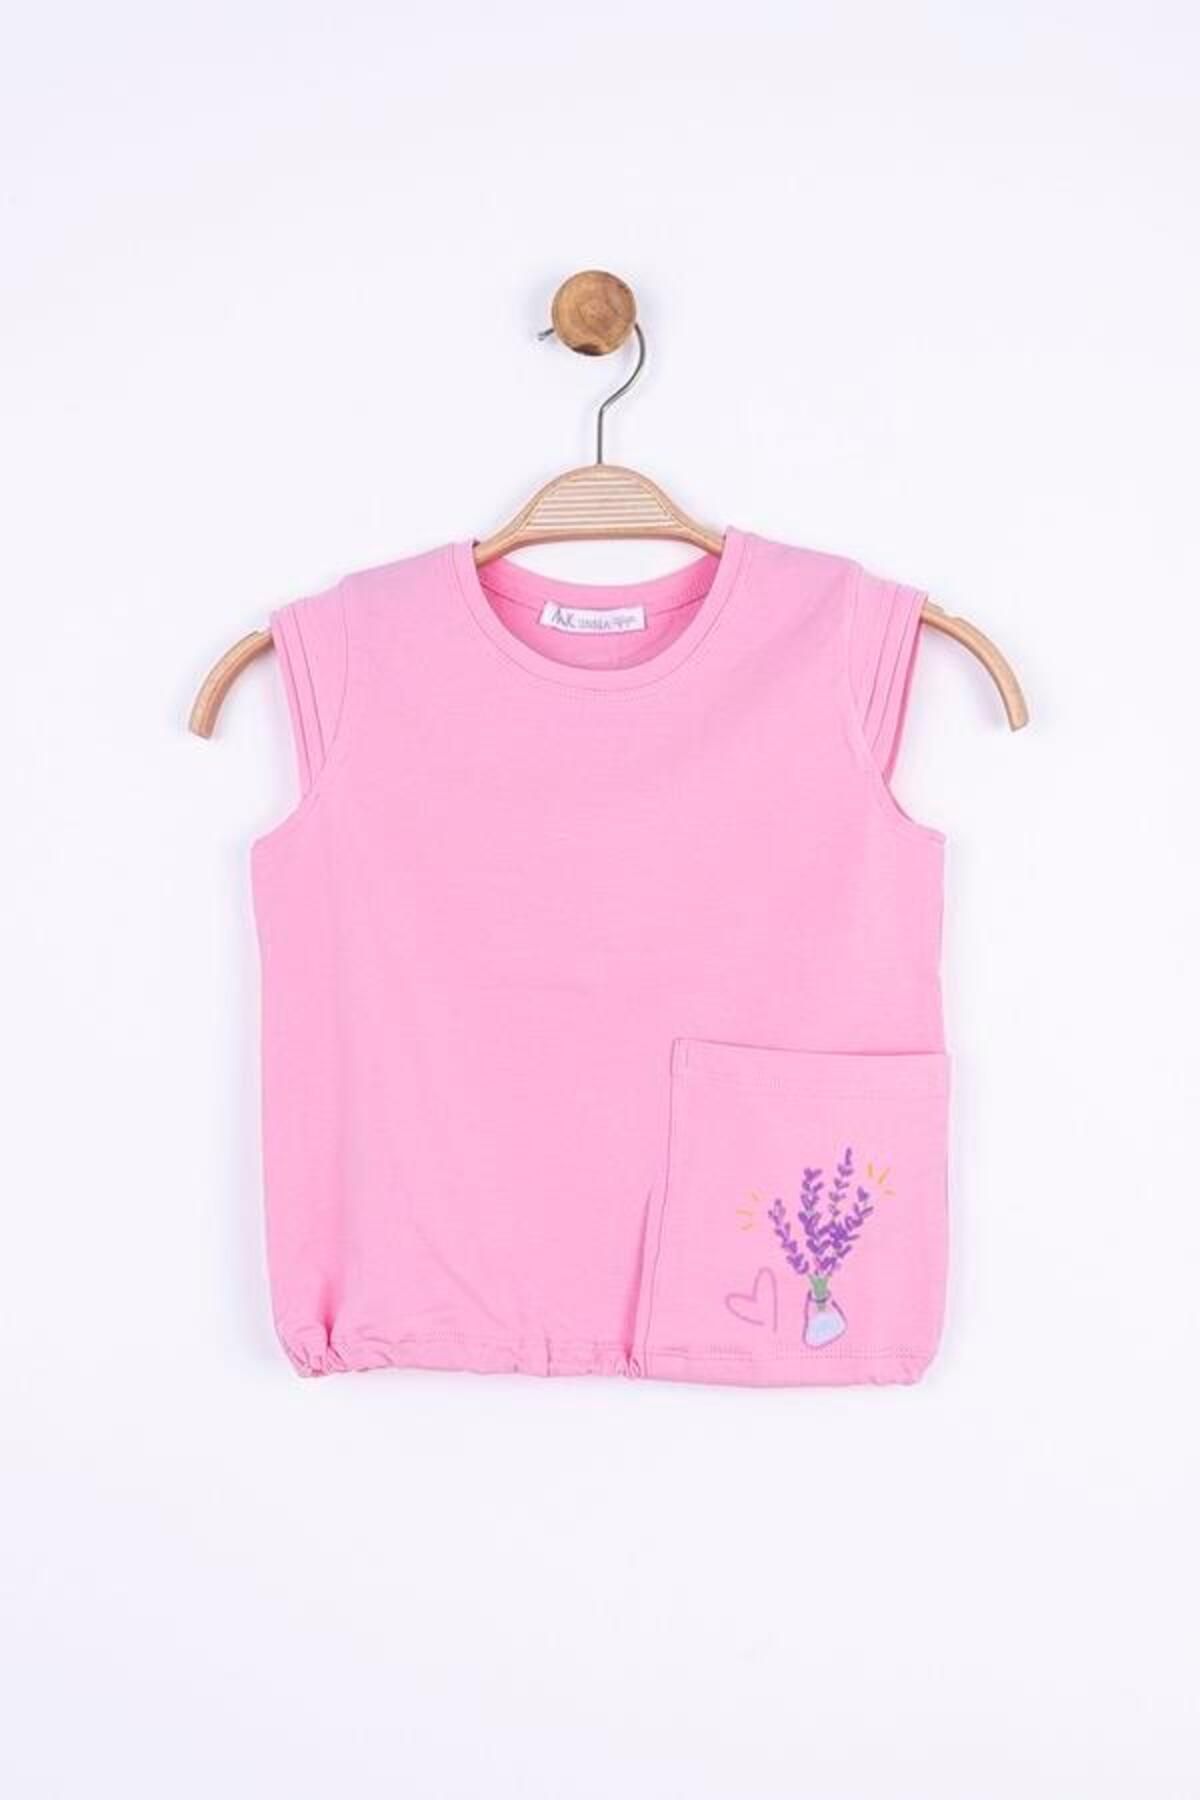 Nk Kids Pastel Tshirt - Pink 4/8